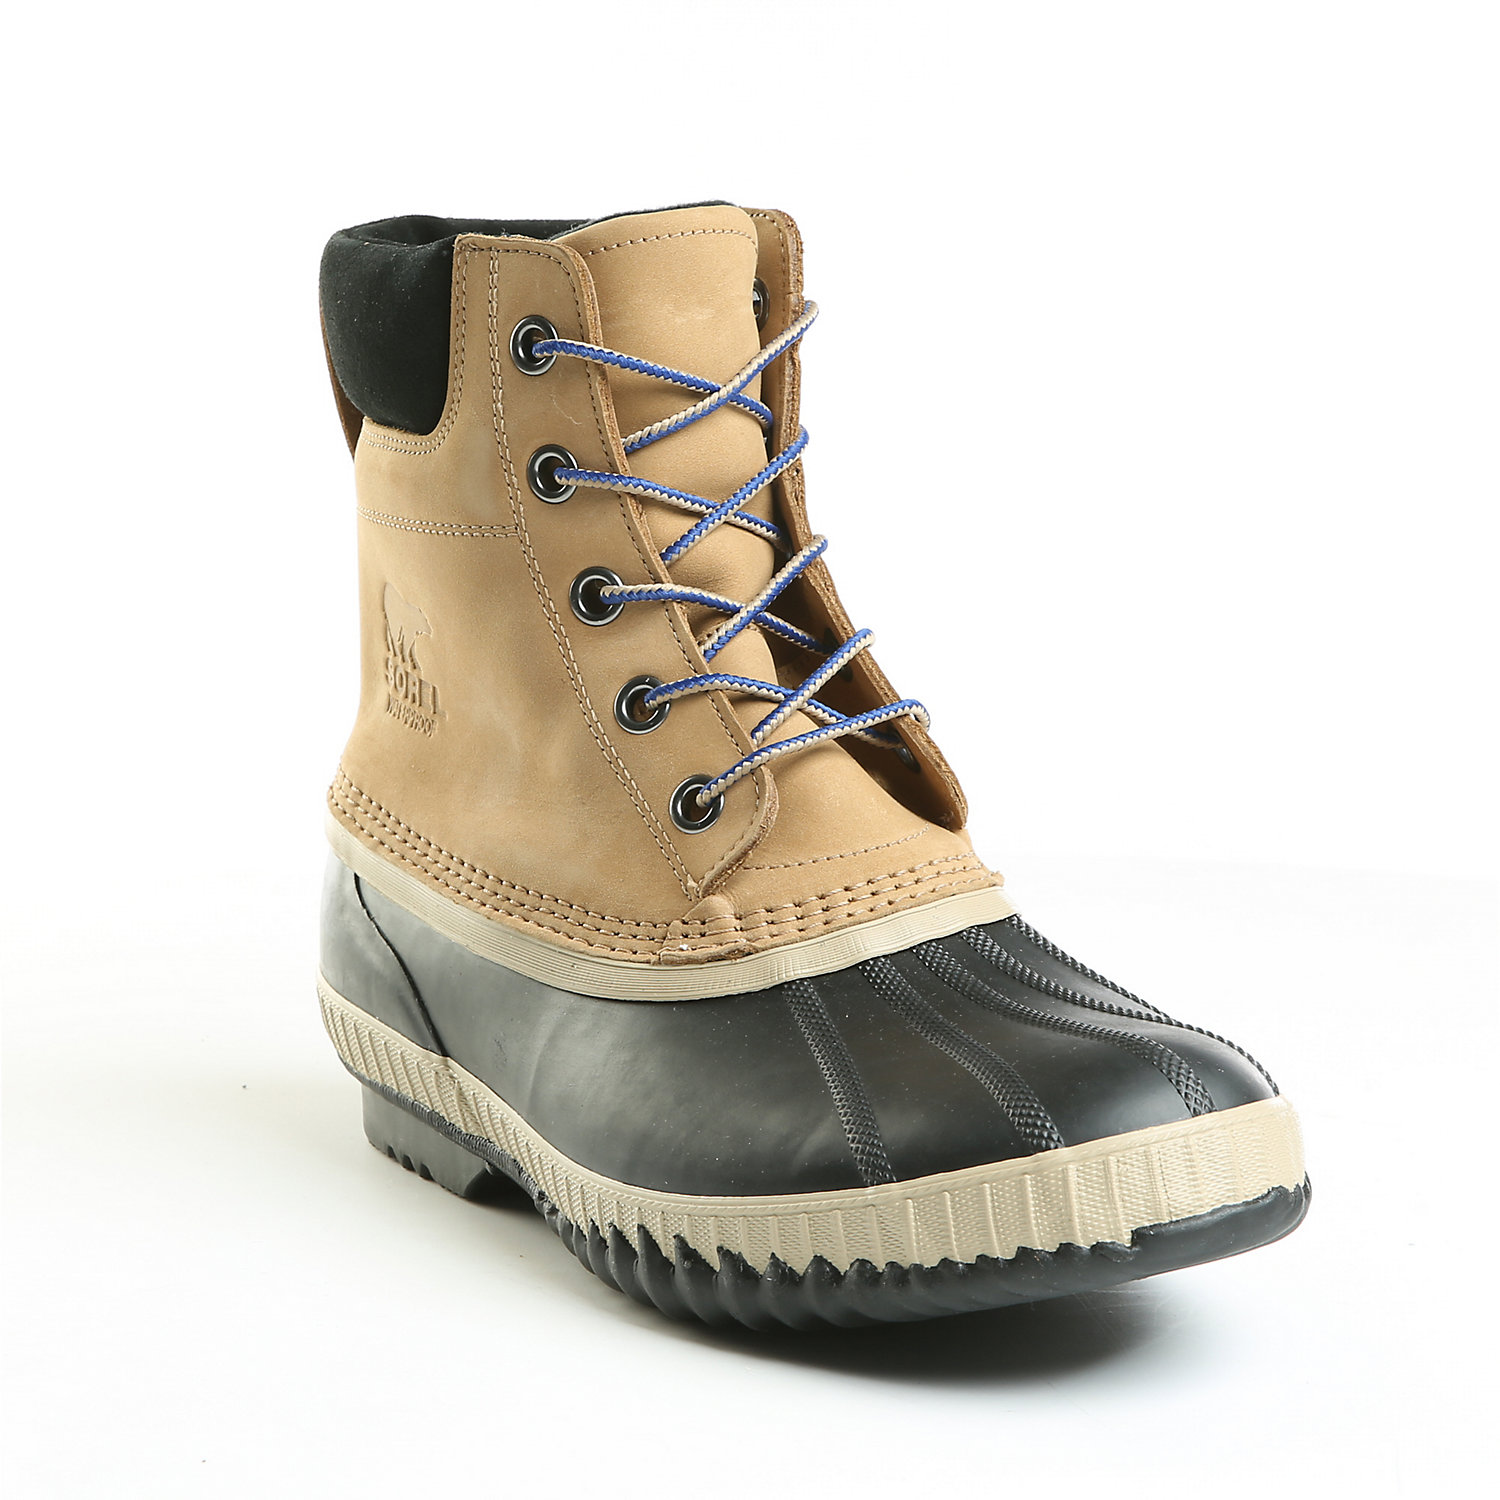 SOREL Men's Cheyanne II Waterproof Insulated Winter Boot